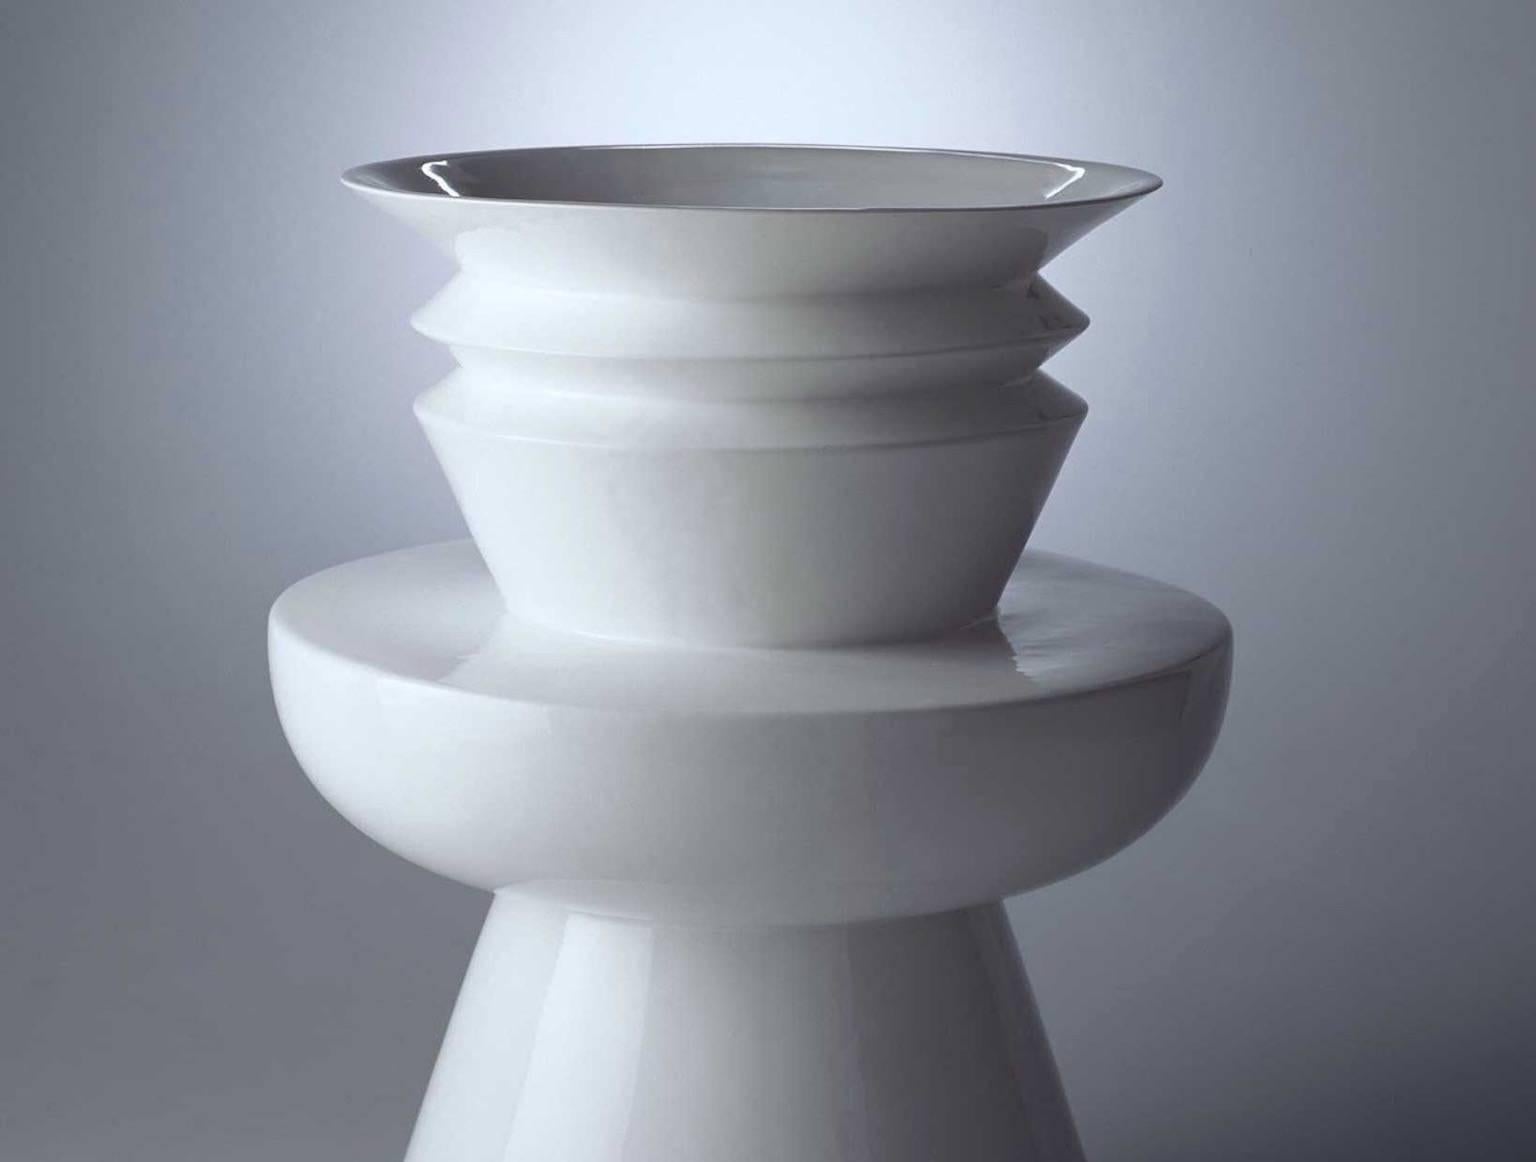 Vase en céramique modèle Kyoto de la Collection S/One 1980 conçu par Sergio Asti et produit par Superego Editions. Édition limitée à 50 exemplaires. Signés et numérotés.

Biographie
Sergio Asti (Milan, 25 mai 1926 - Milan, 27 juillet 2021) s'est